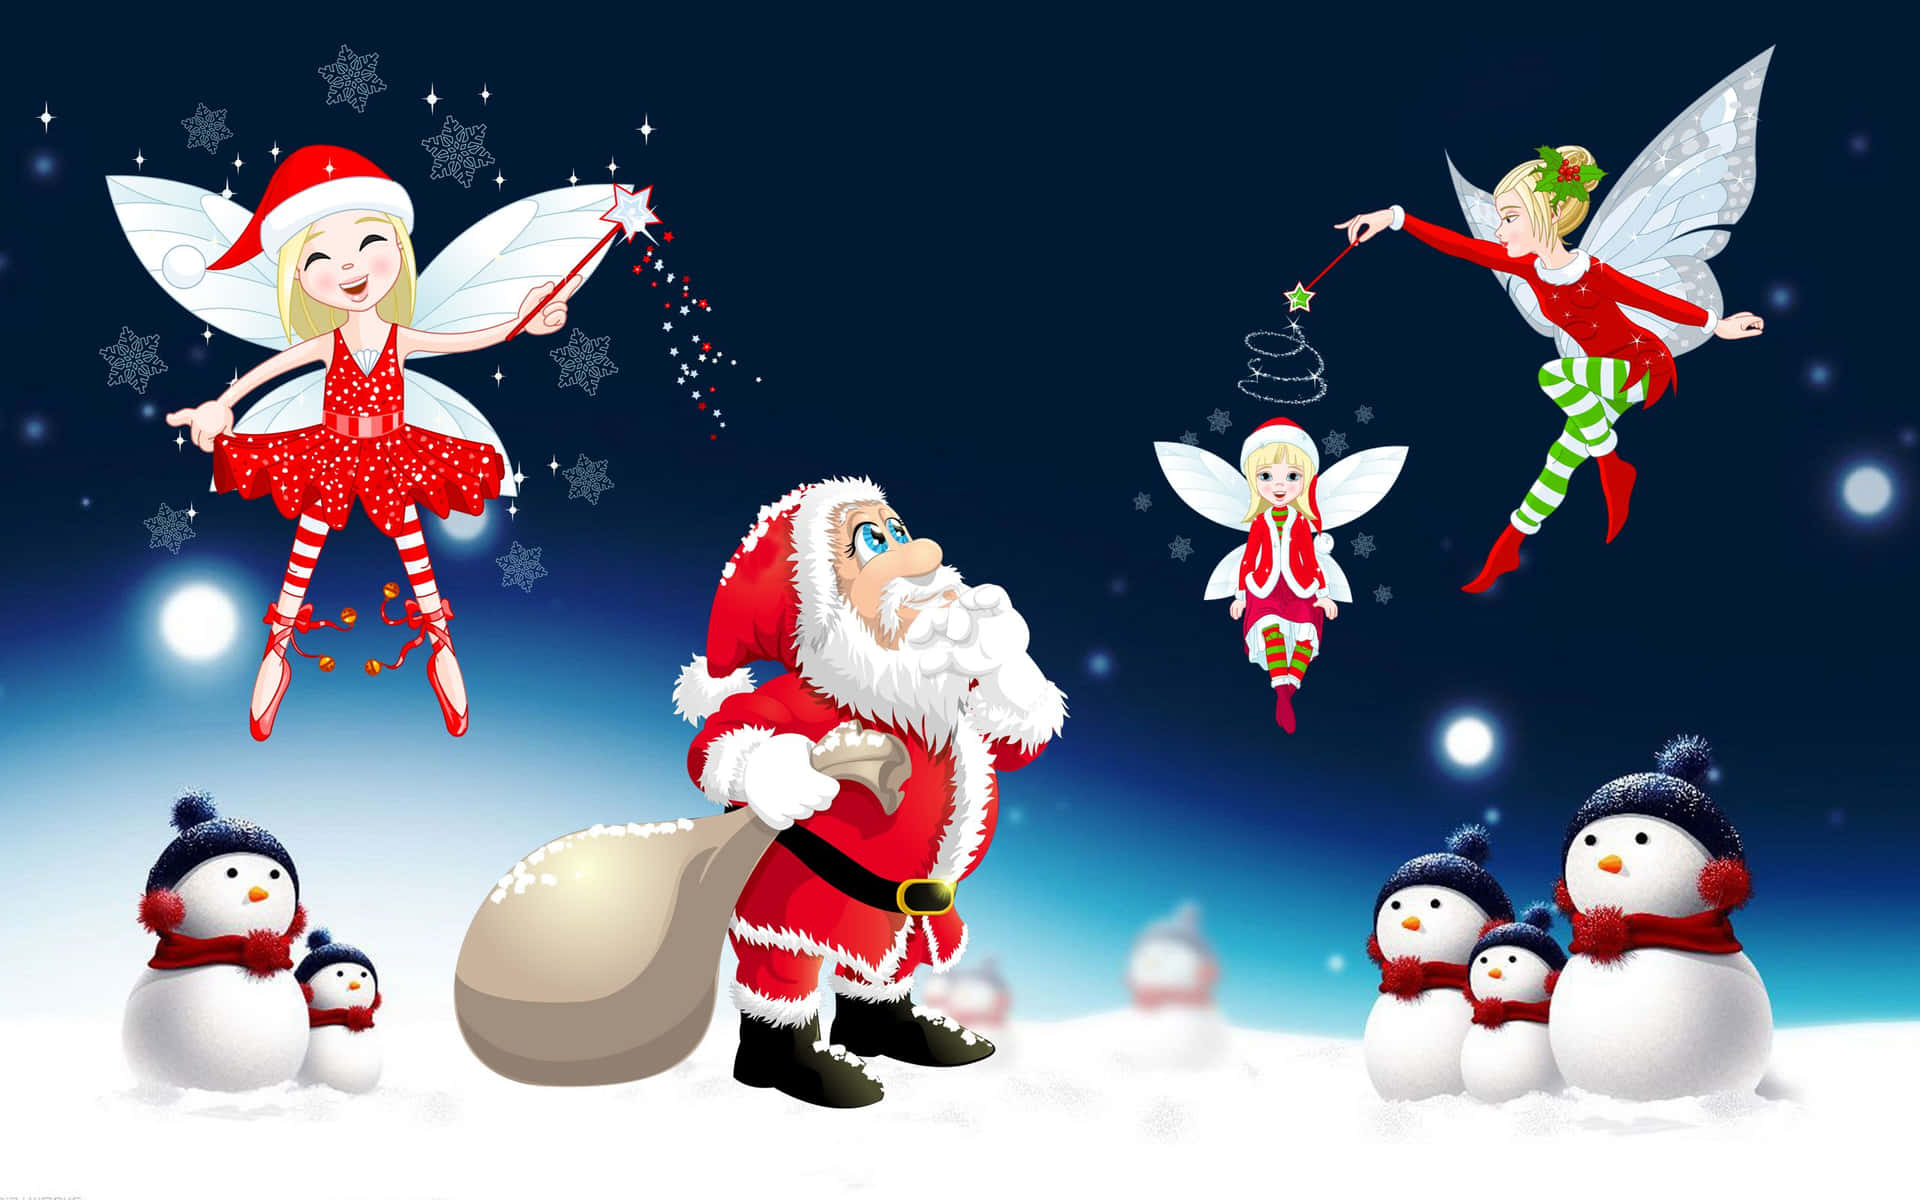 A Merry Santa Claus Bringing Festive Joy Wallpaper